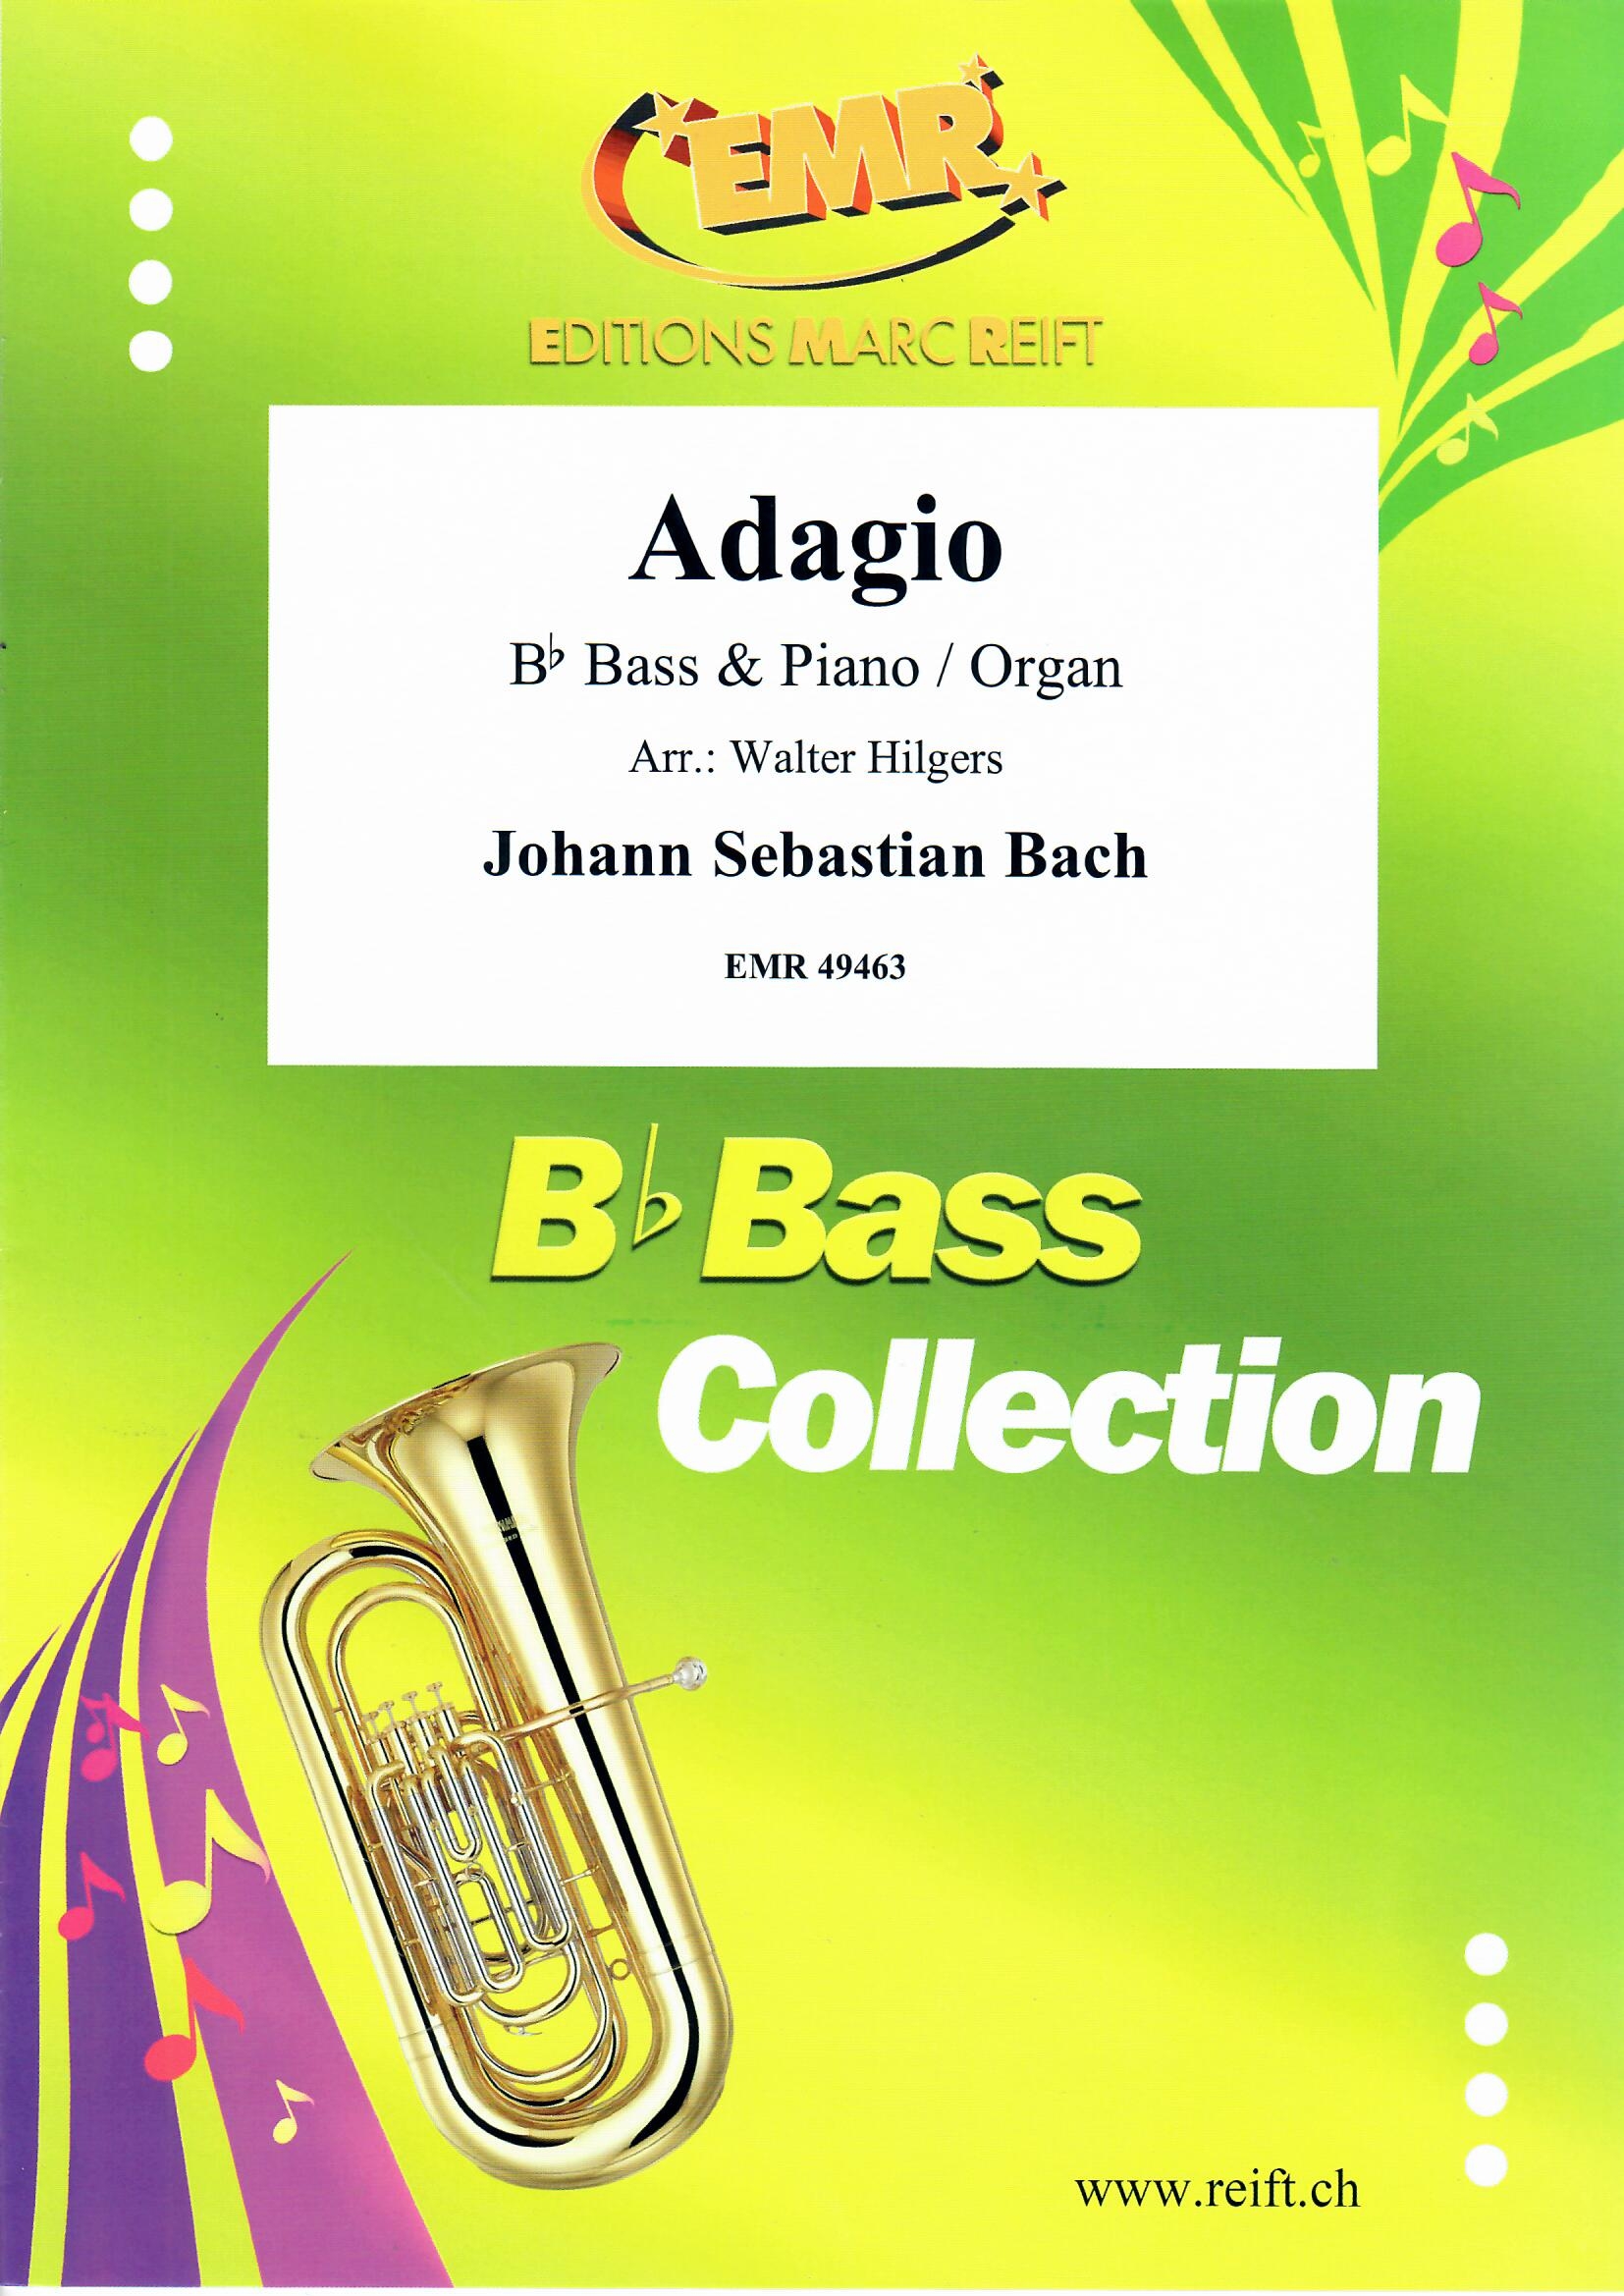 ADAGIO - Bb. Bass & Organ